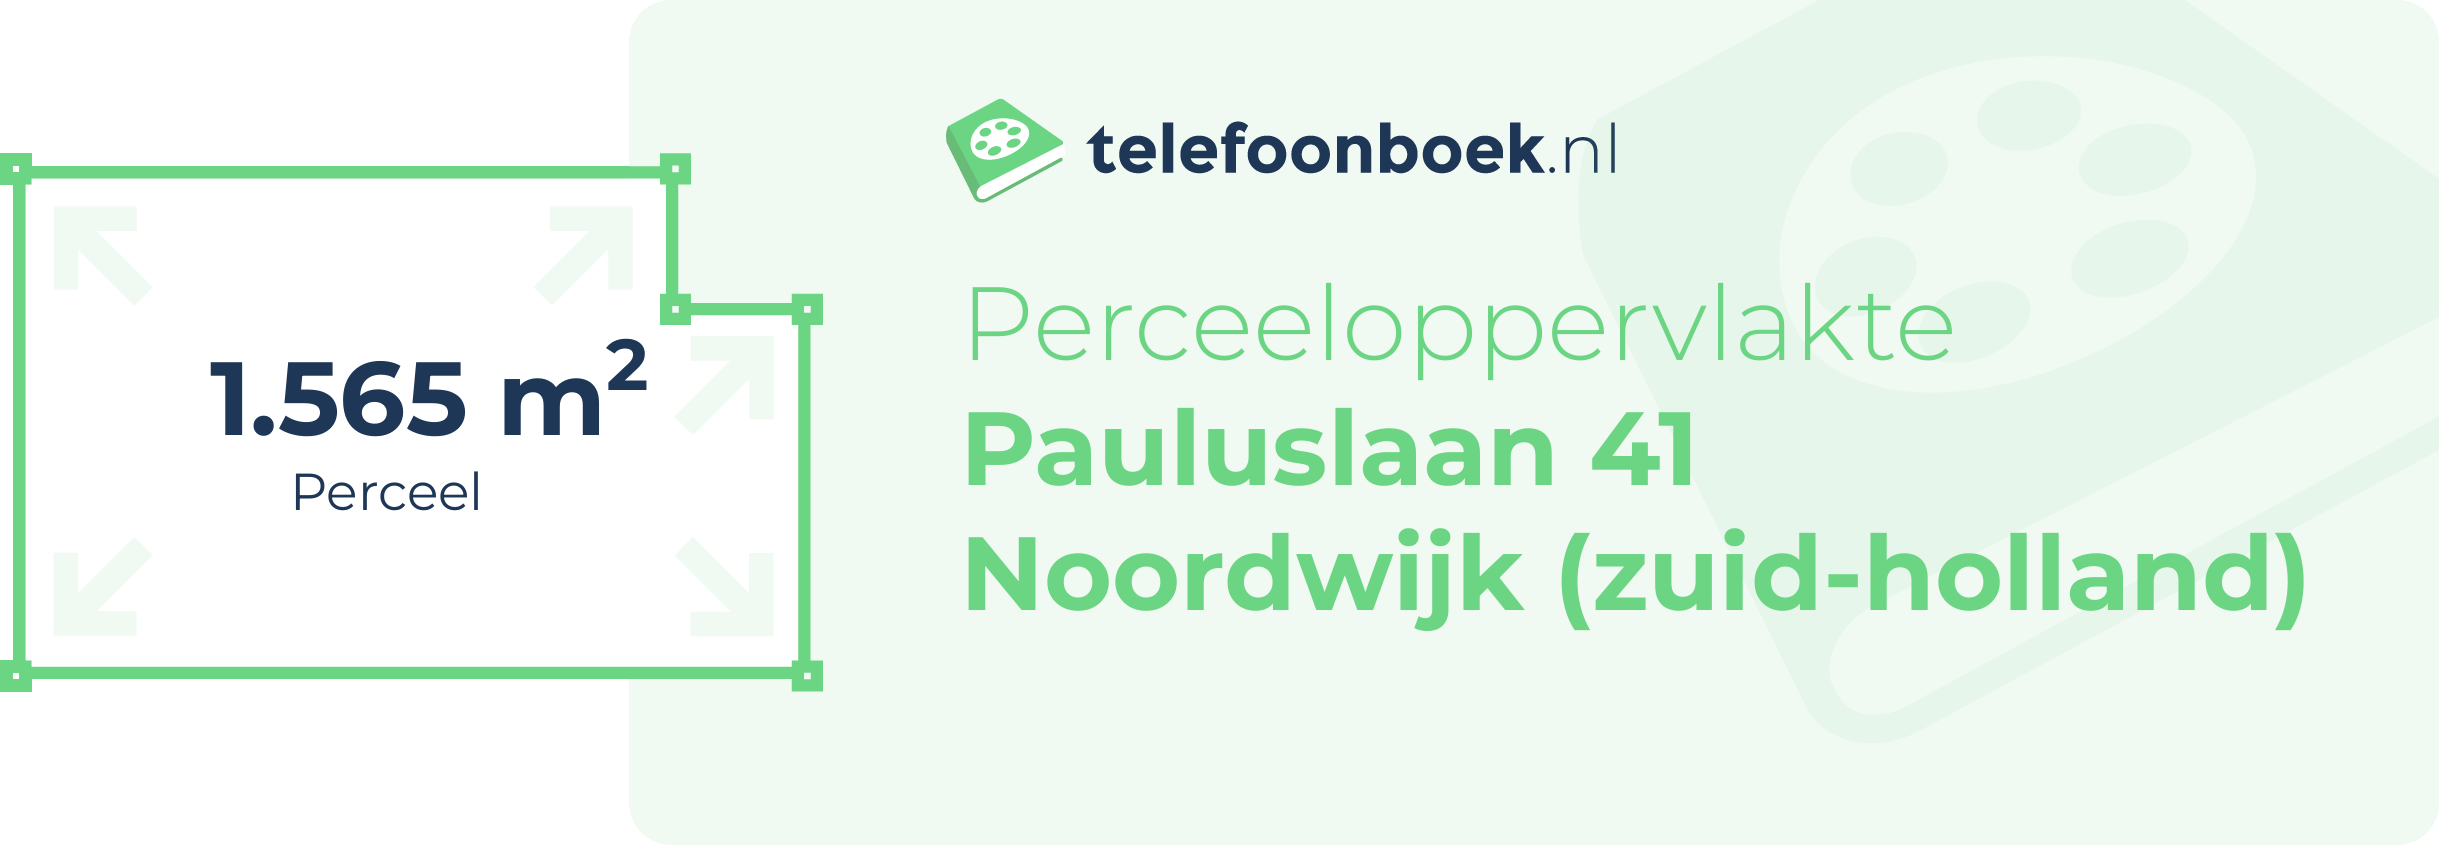 Perceeloppervlakte Pauluslaan 41 Noordwijk (Zuid-Holland)